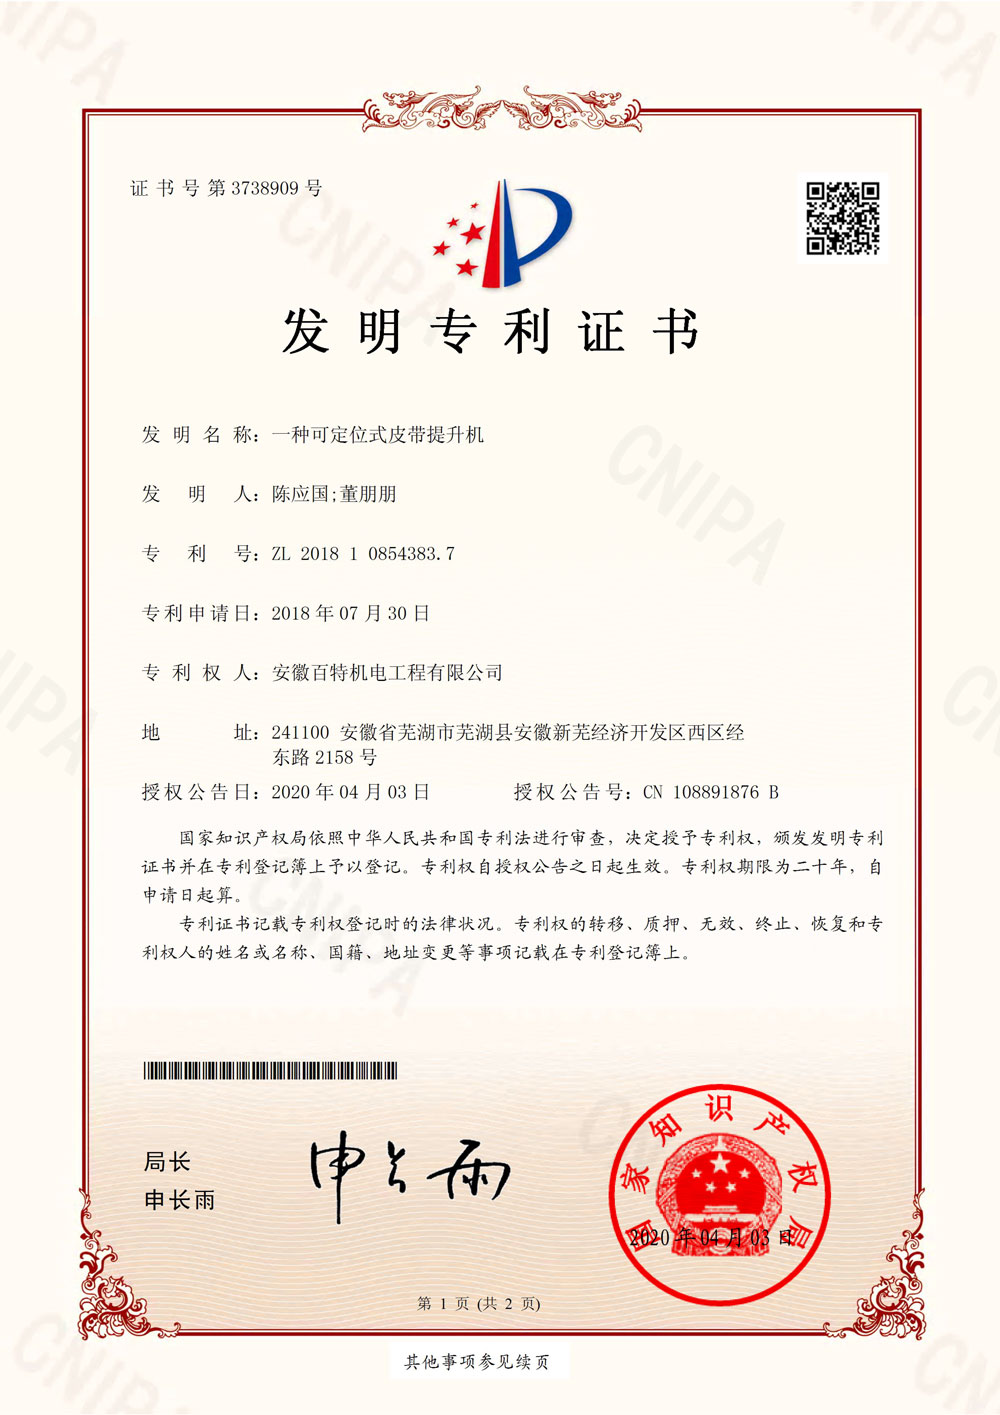 上海百特第8件发明证书-1